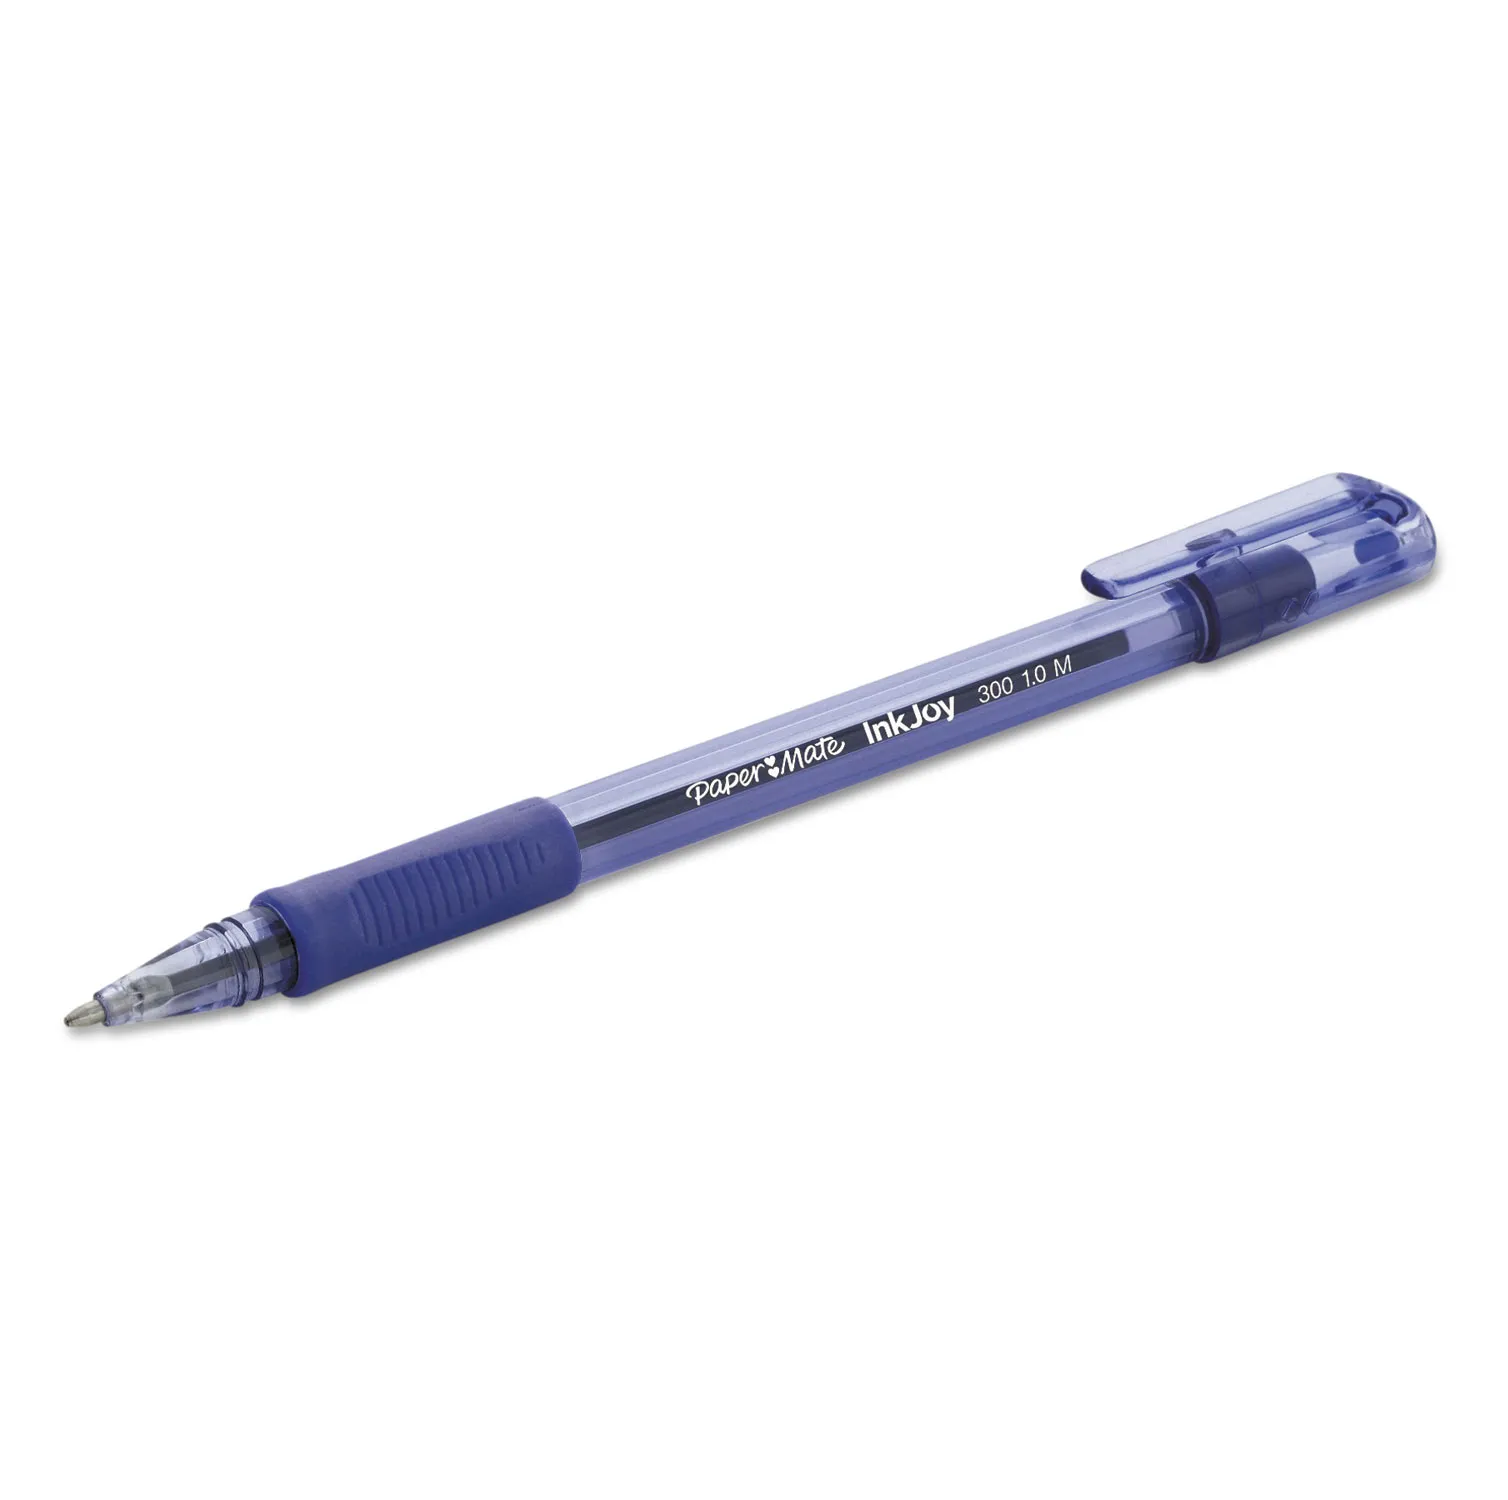 Parker Jotter XL Ballpoint Pen Medium Point 0.7 mm Monochrome Matte Gold  Barrel Blue Ink - Office Depot